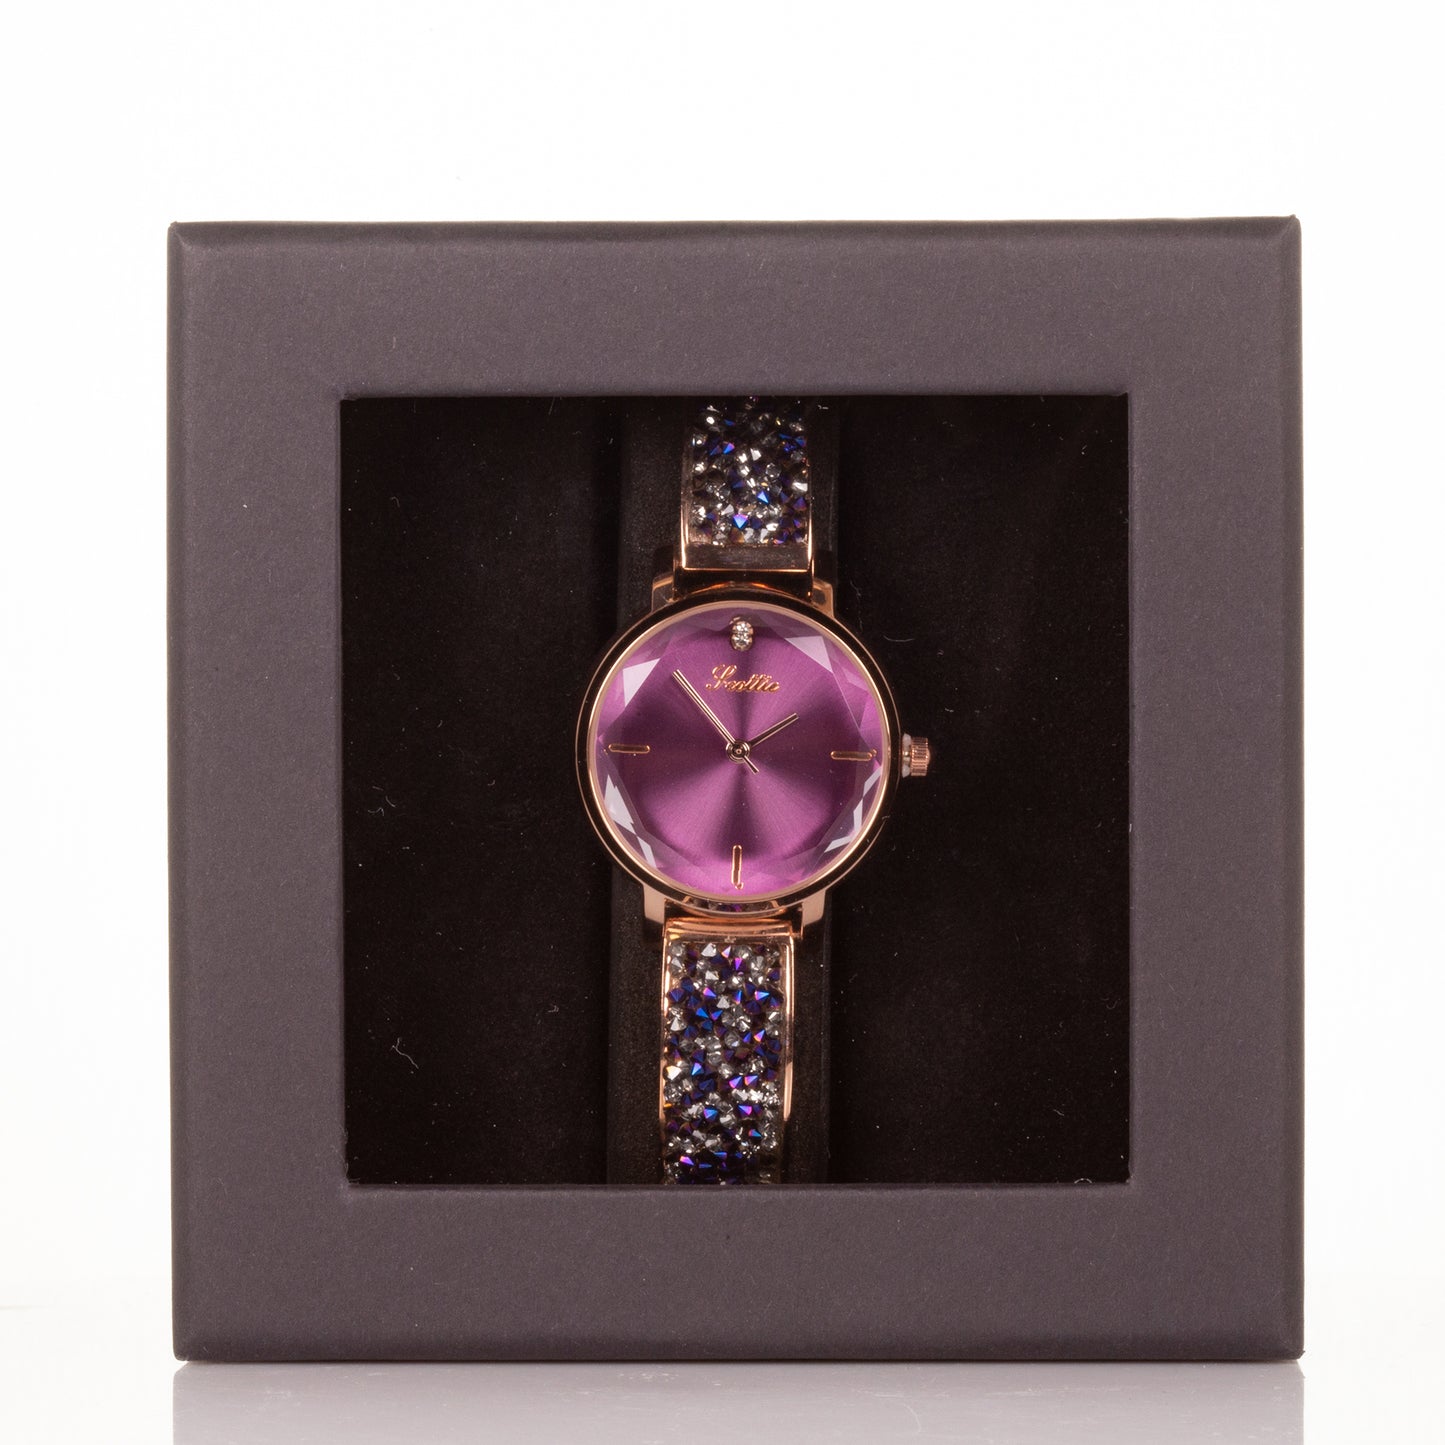 Laadukas Miyota Movements metallirannekello lahjapakkauksella, violetti kellotaulu